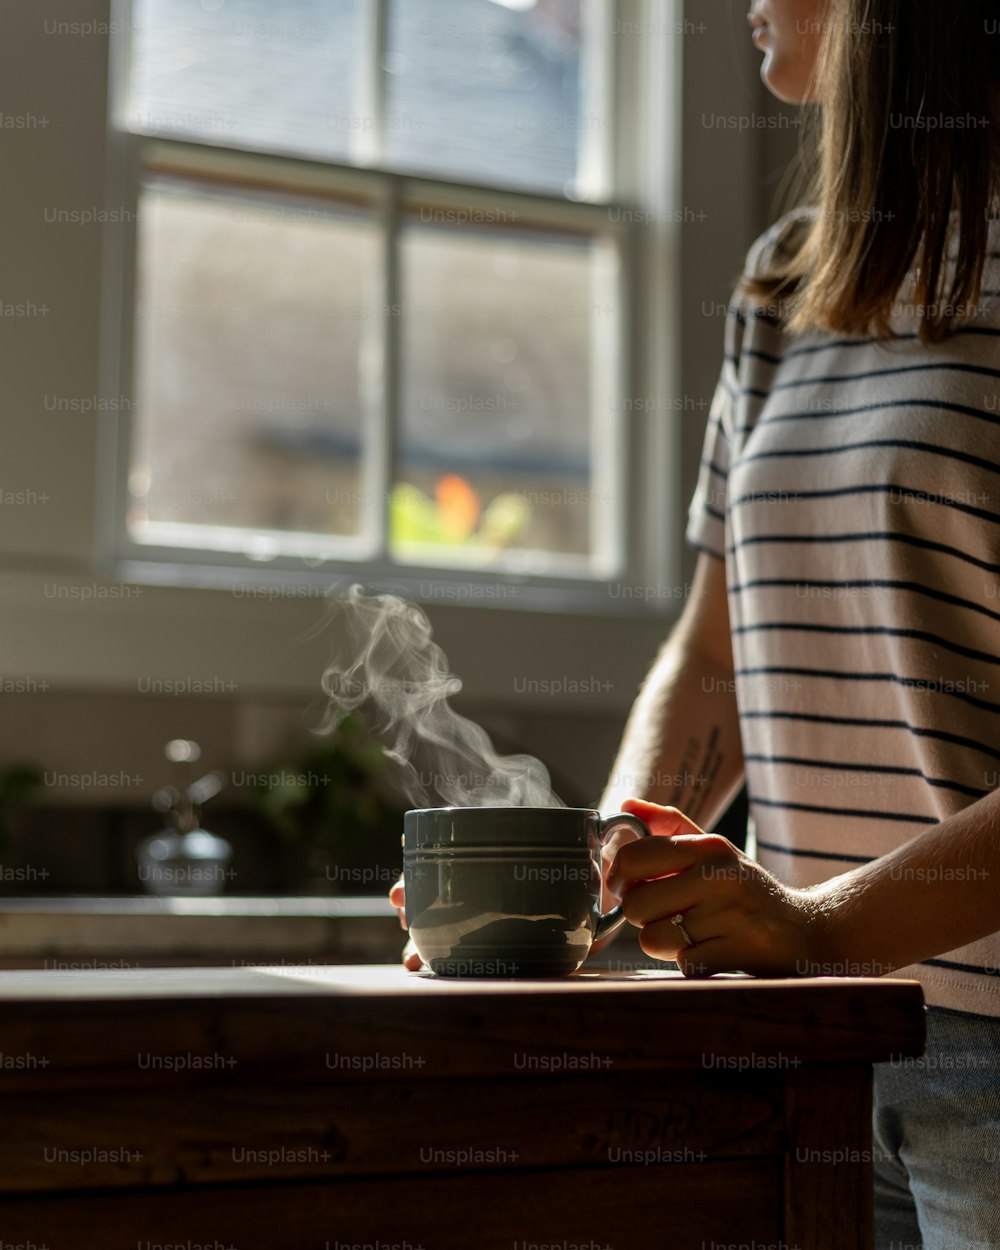 Una mujer parada en el mostrador de la cocina sosteniendo una taza